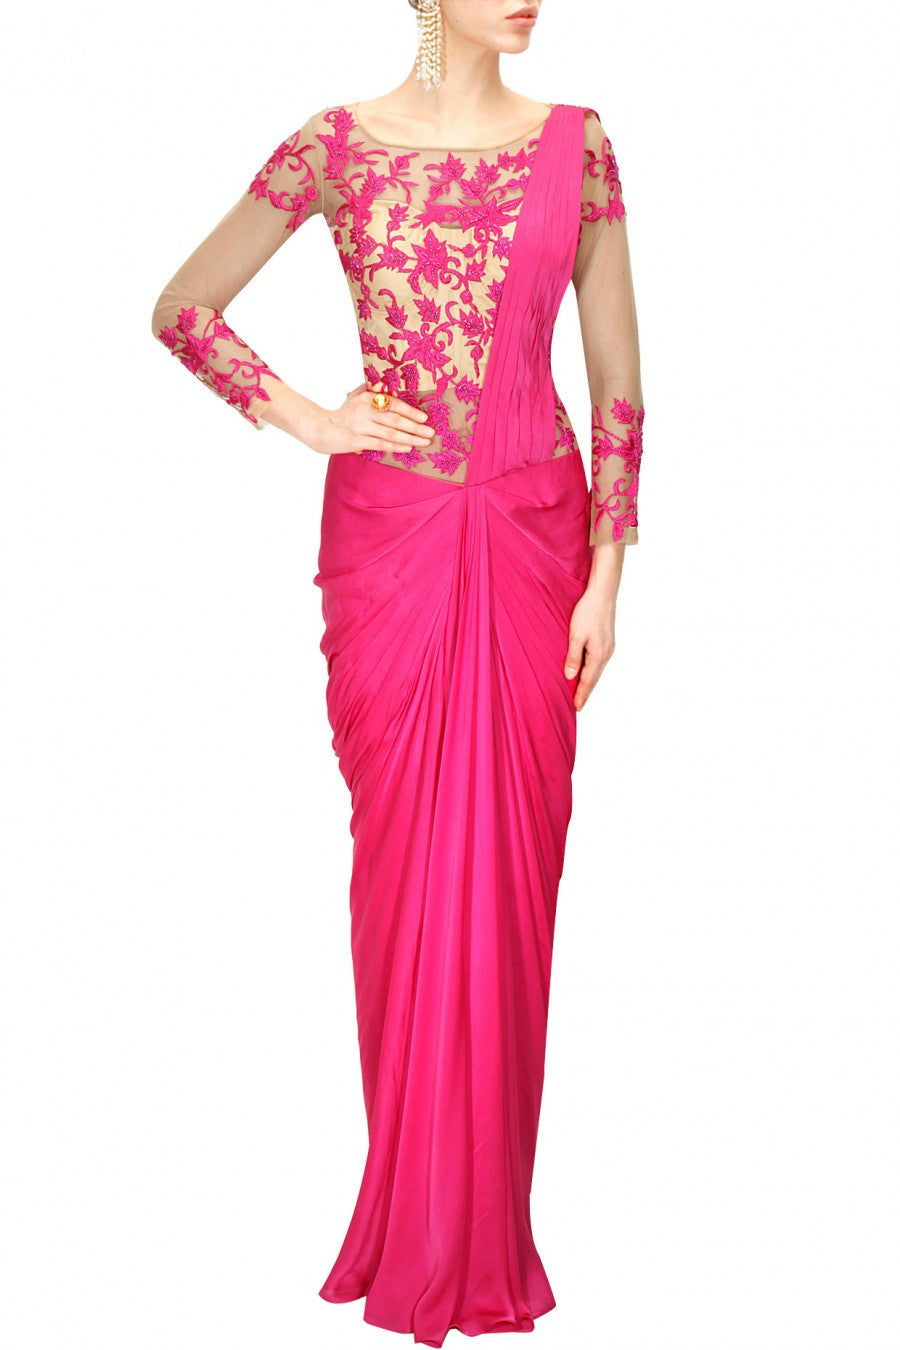 490 Old saree dress. ideas in 2023 | saree dress, long dress design,  designer dresses indian